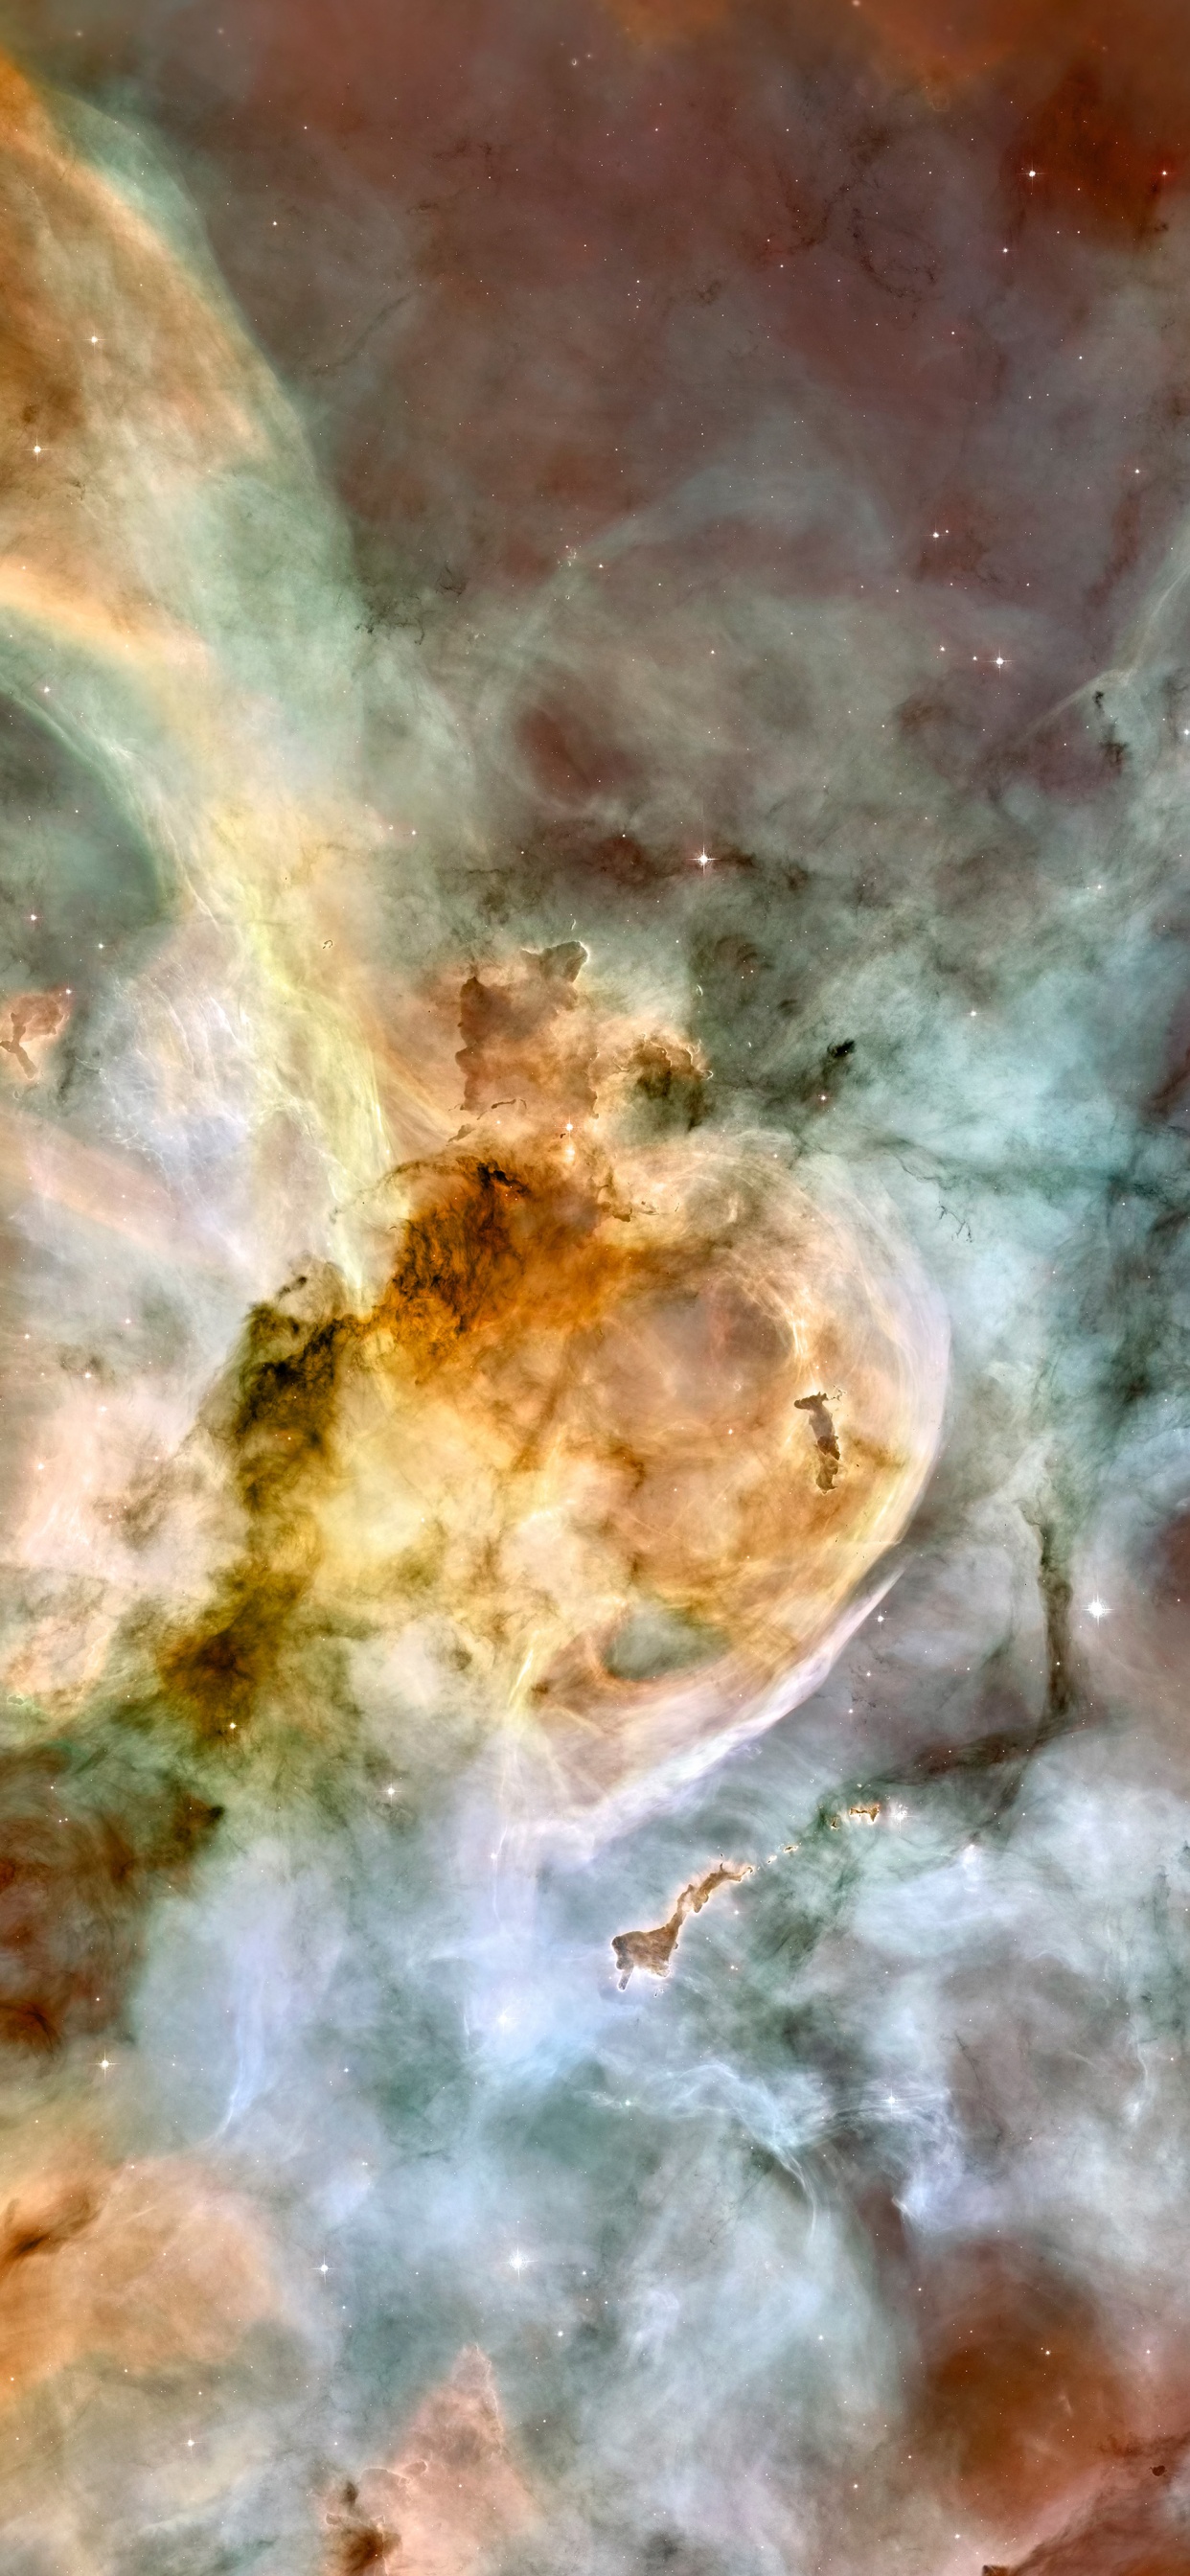 Carina星云, 哈勃太空望远镜, 明星, 空间, 天文学对象 壁纸 1242x2688 允许